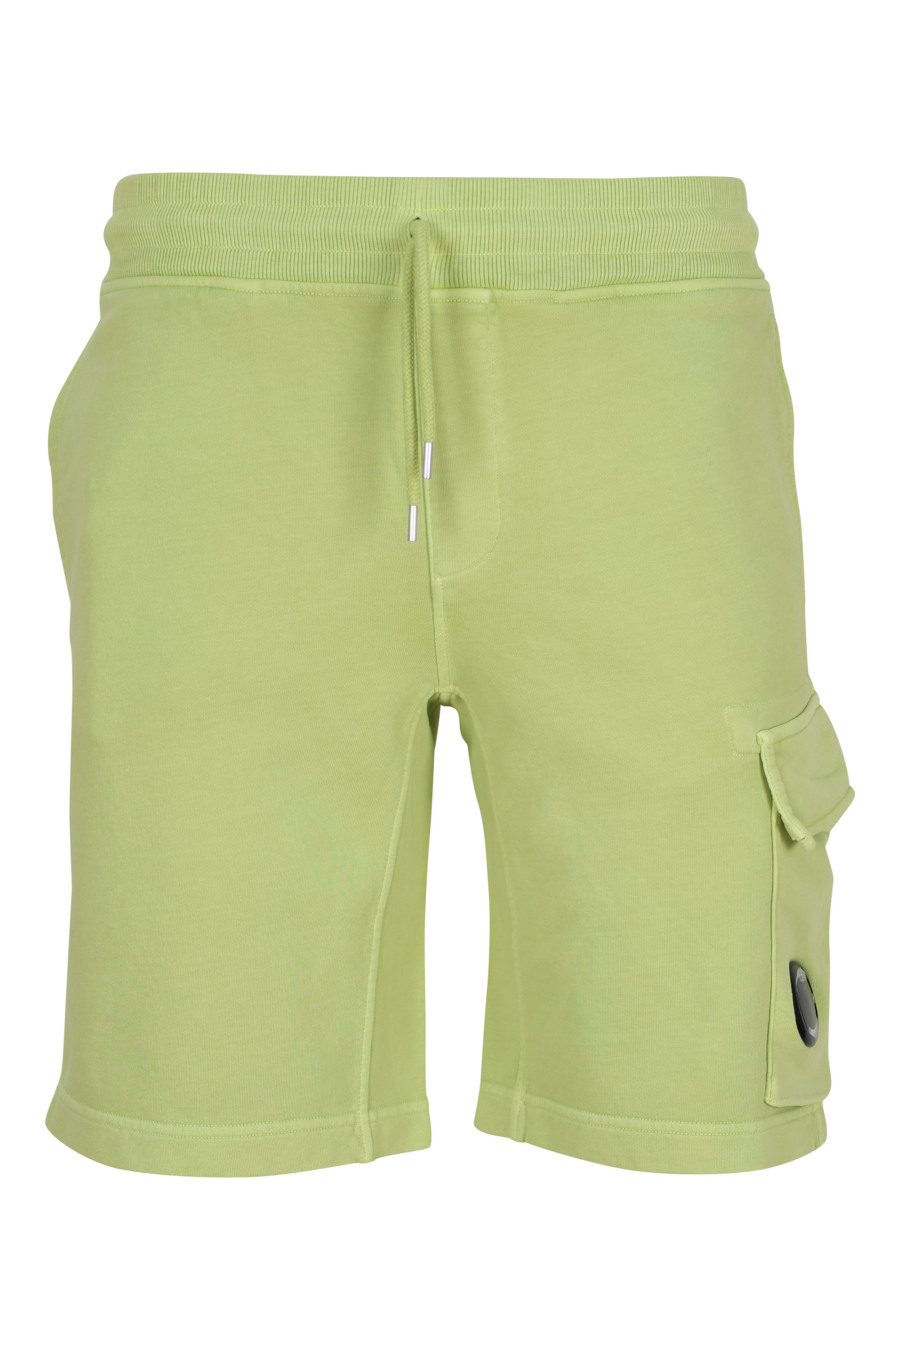 Pantalón de chándal midi verde claro estilo cargo con minilogo lente - 7620943731422